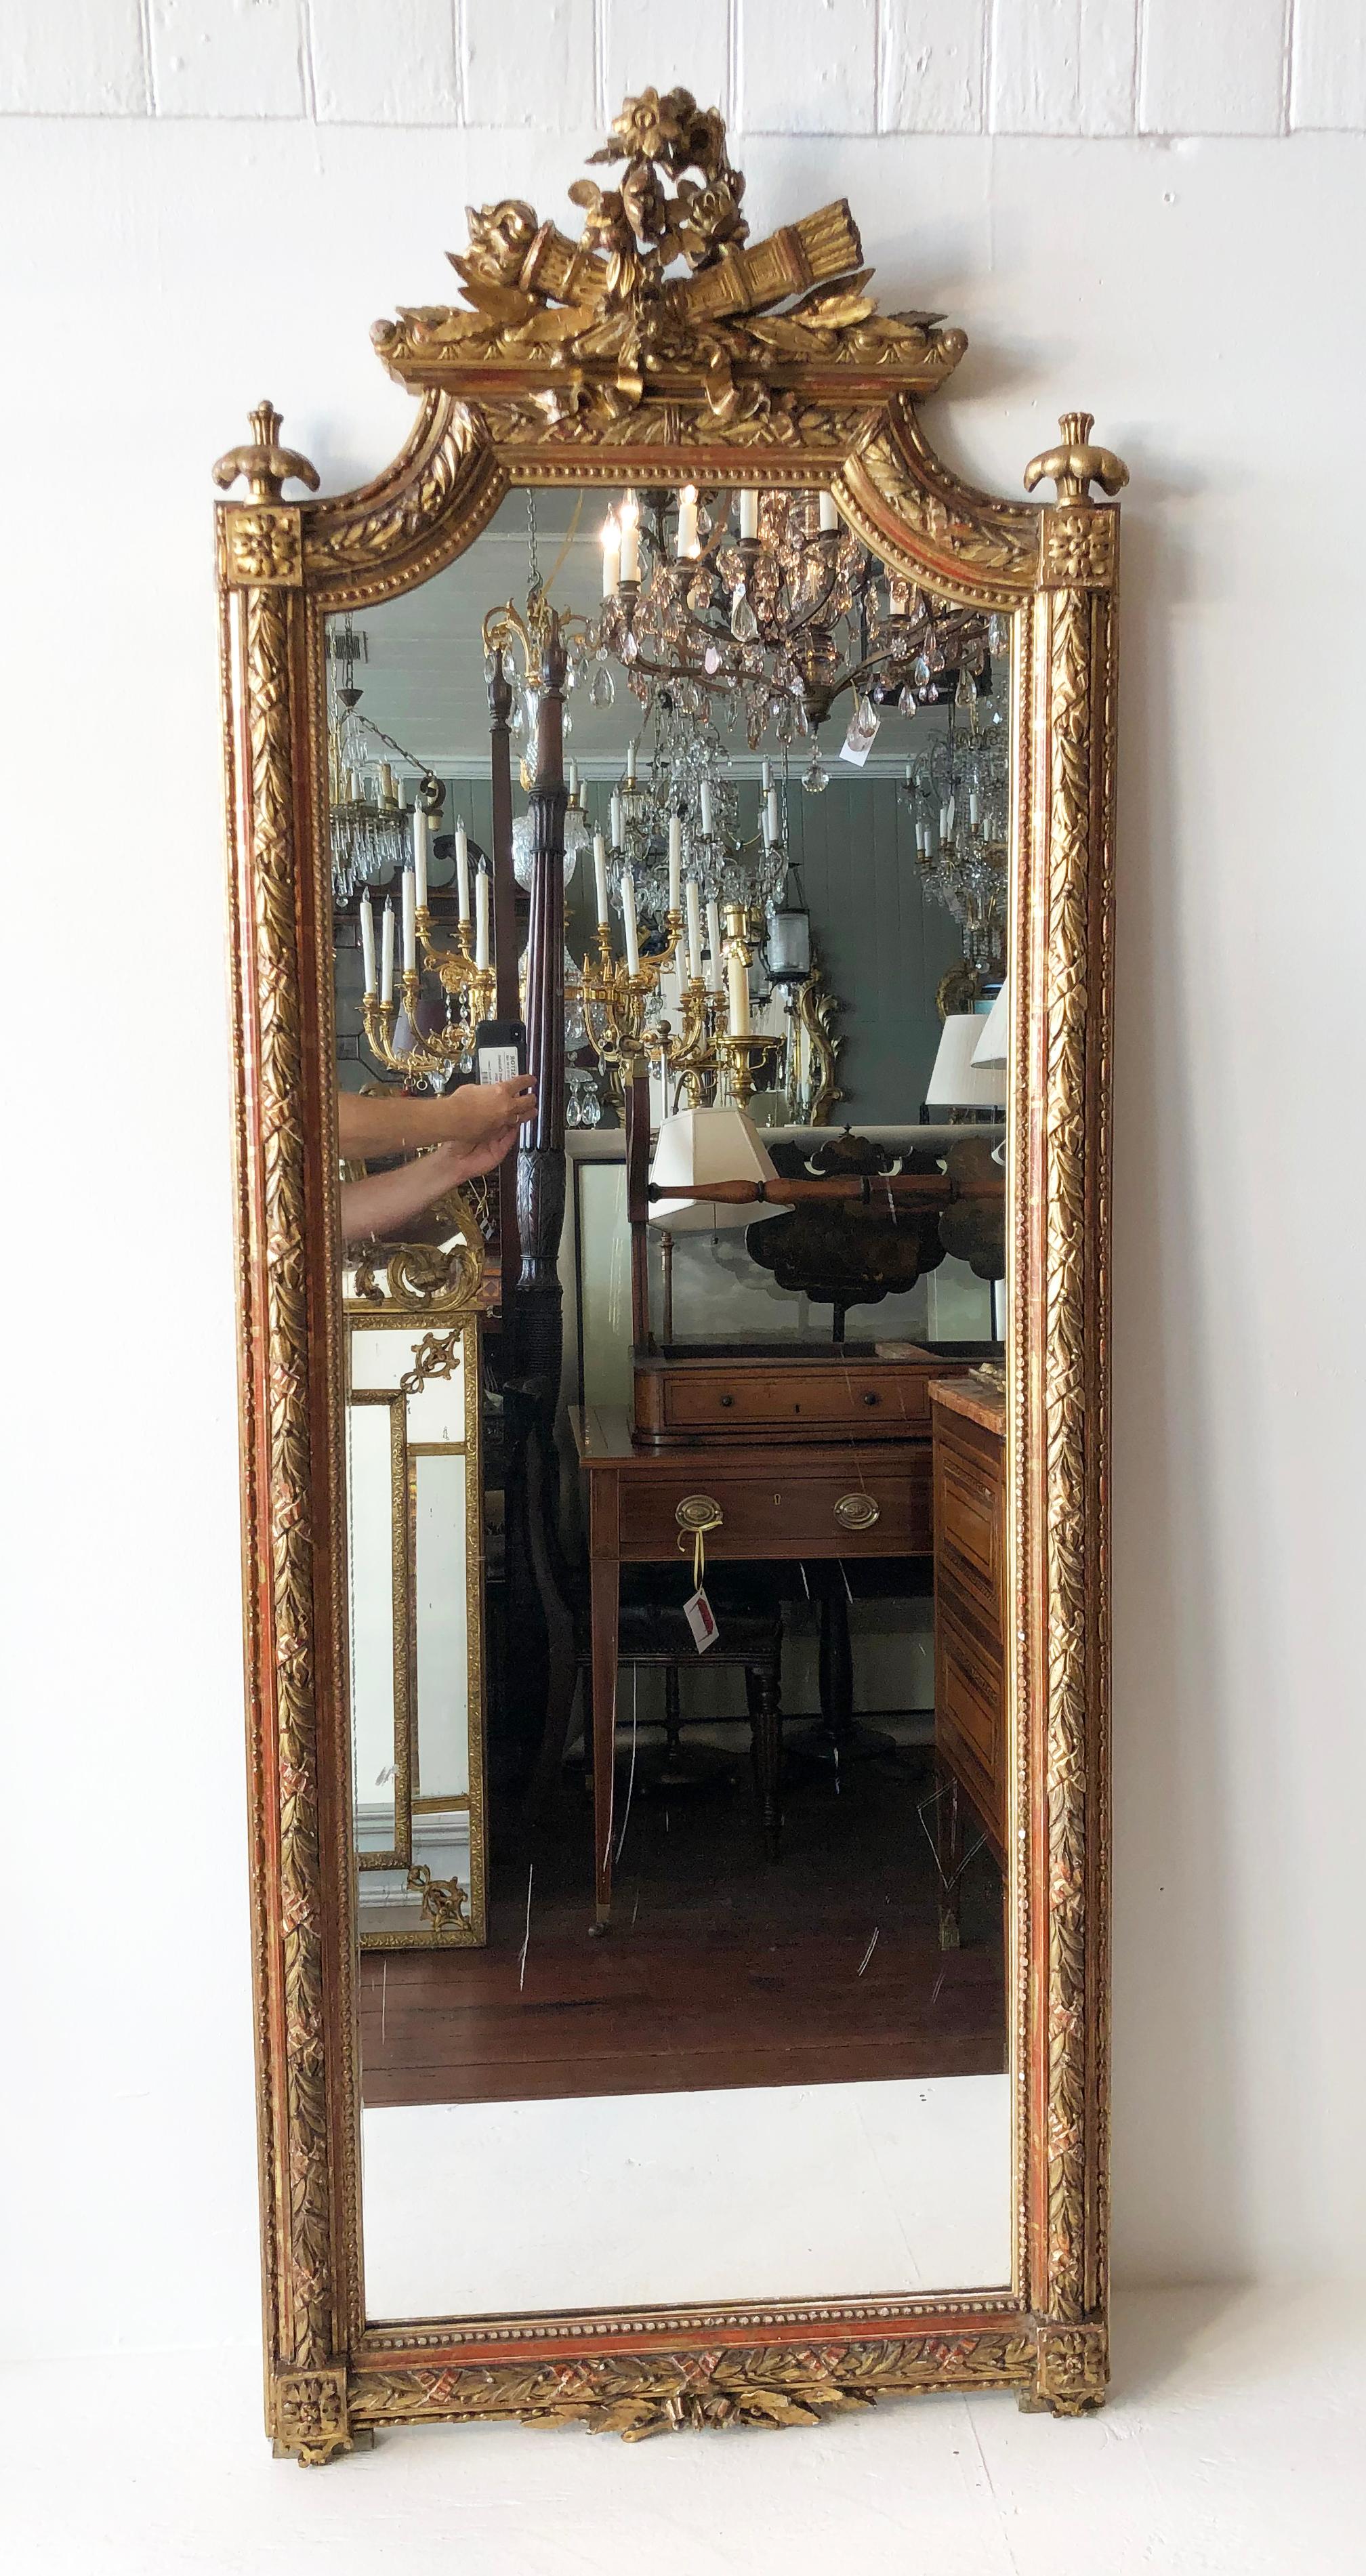 Fabelhafter italienischer Spiegel aus geschnitztem Goldholz aus der Mitte des 19. Jahrhunderts, der der Region Piemont in Italien zugeschrieben wird. Sorgfältig geschnitztes Wappen mit Girlande, Blumenkranz, Köcher mit Pfeilen und Fackel.